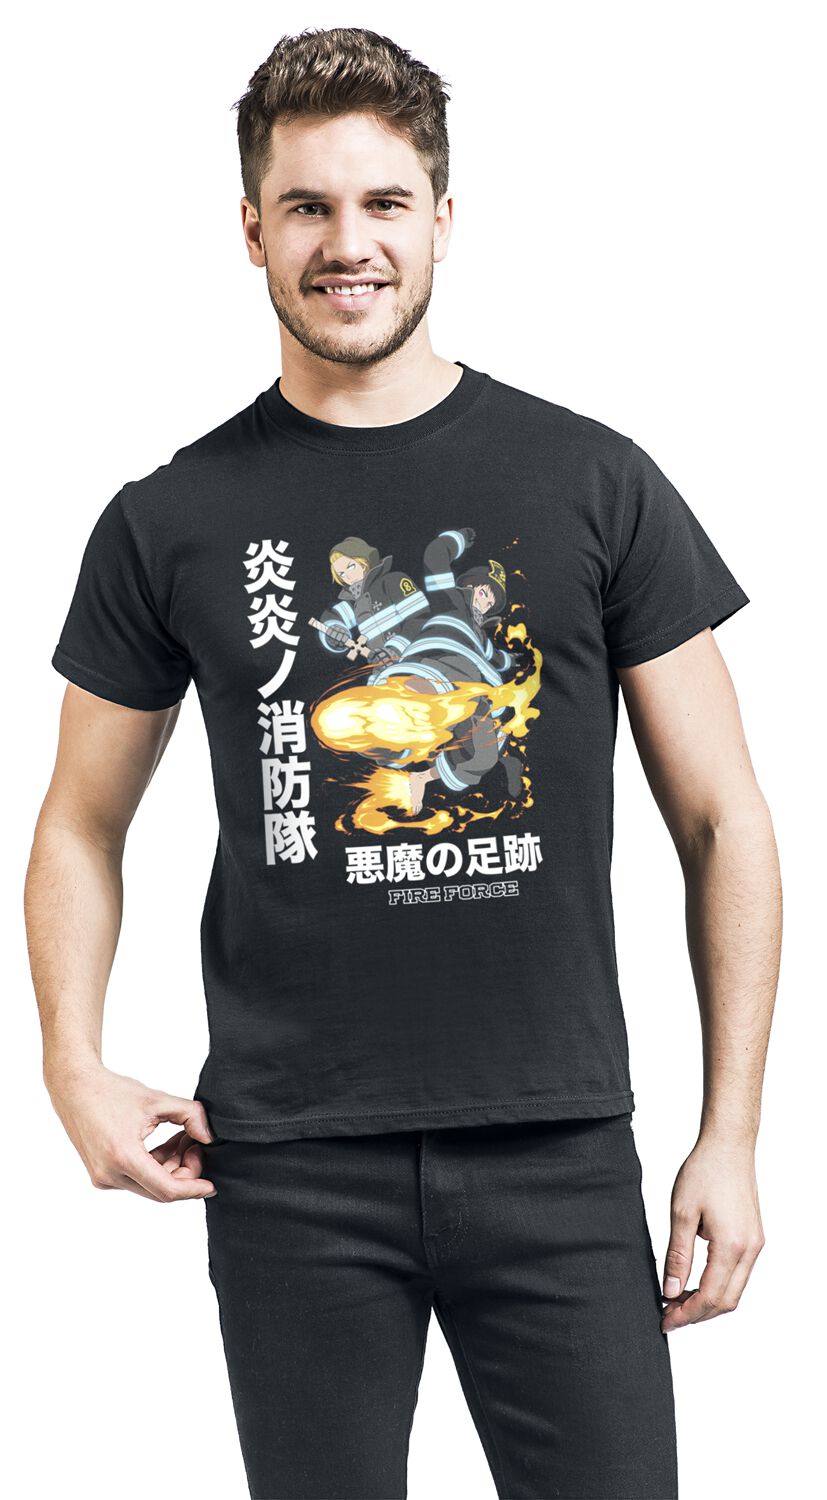 Fire Force - Anime T-Shirt - Devil Footprints - S bis M - für Männer - Größe M - schwarz  - Lizenzierter Fanartikel von Fire Force